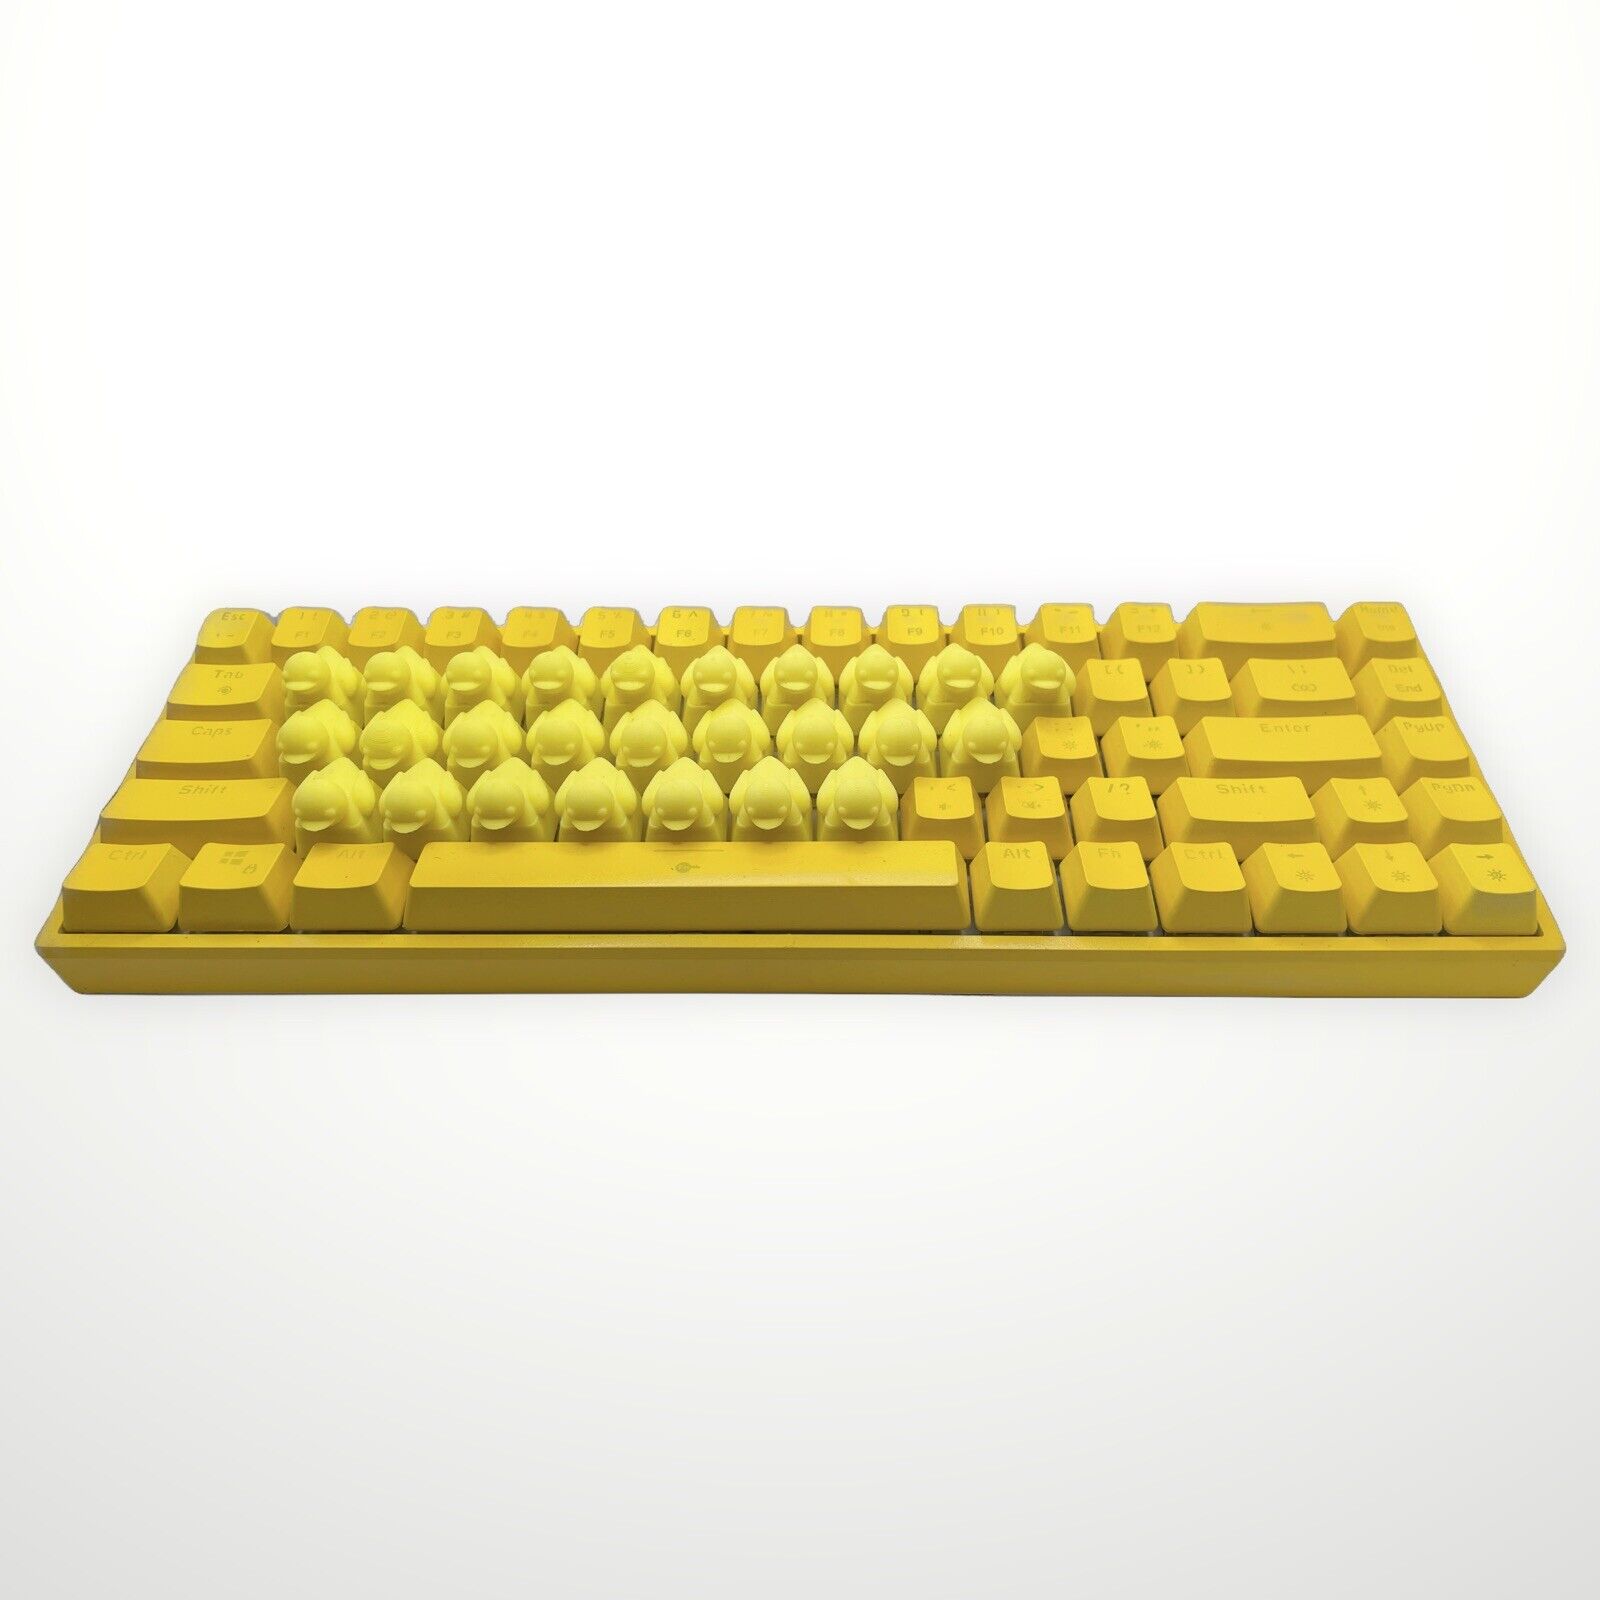 3D Printed Duck Keyboard